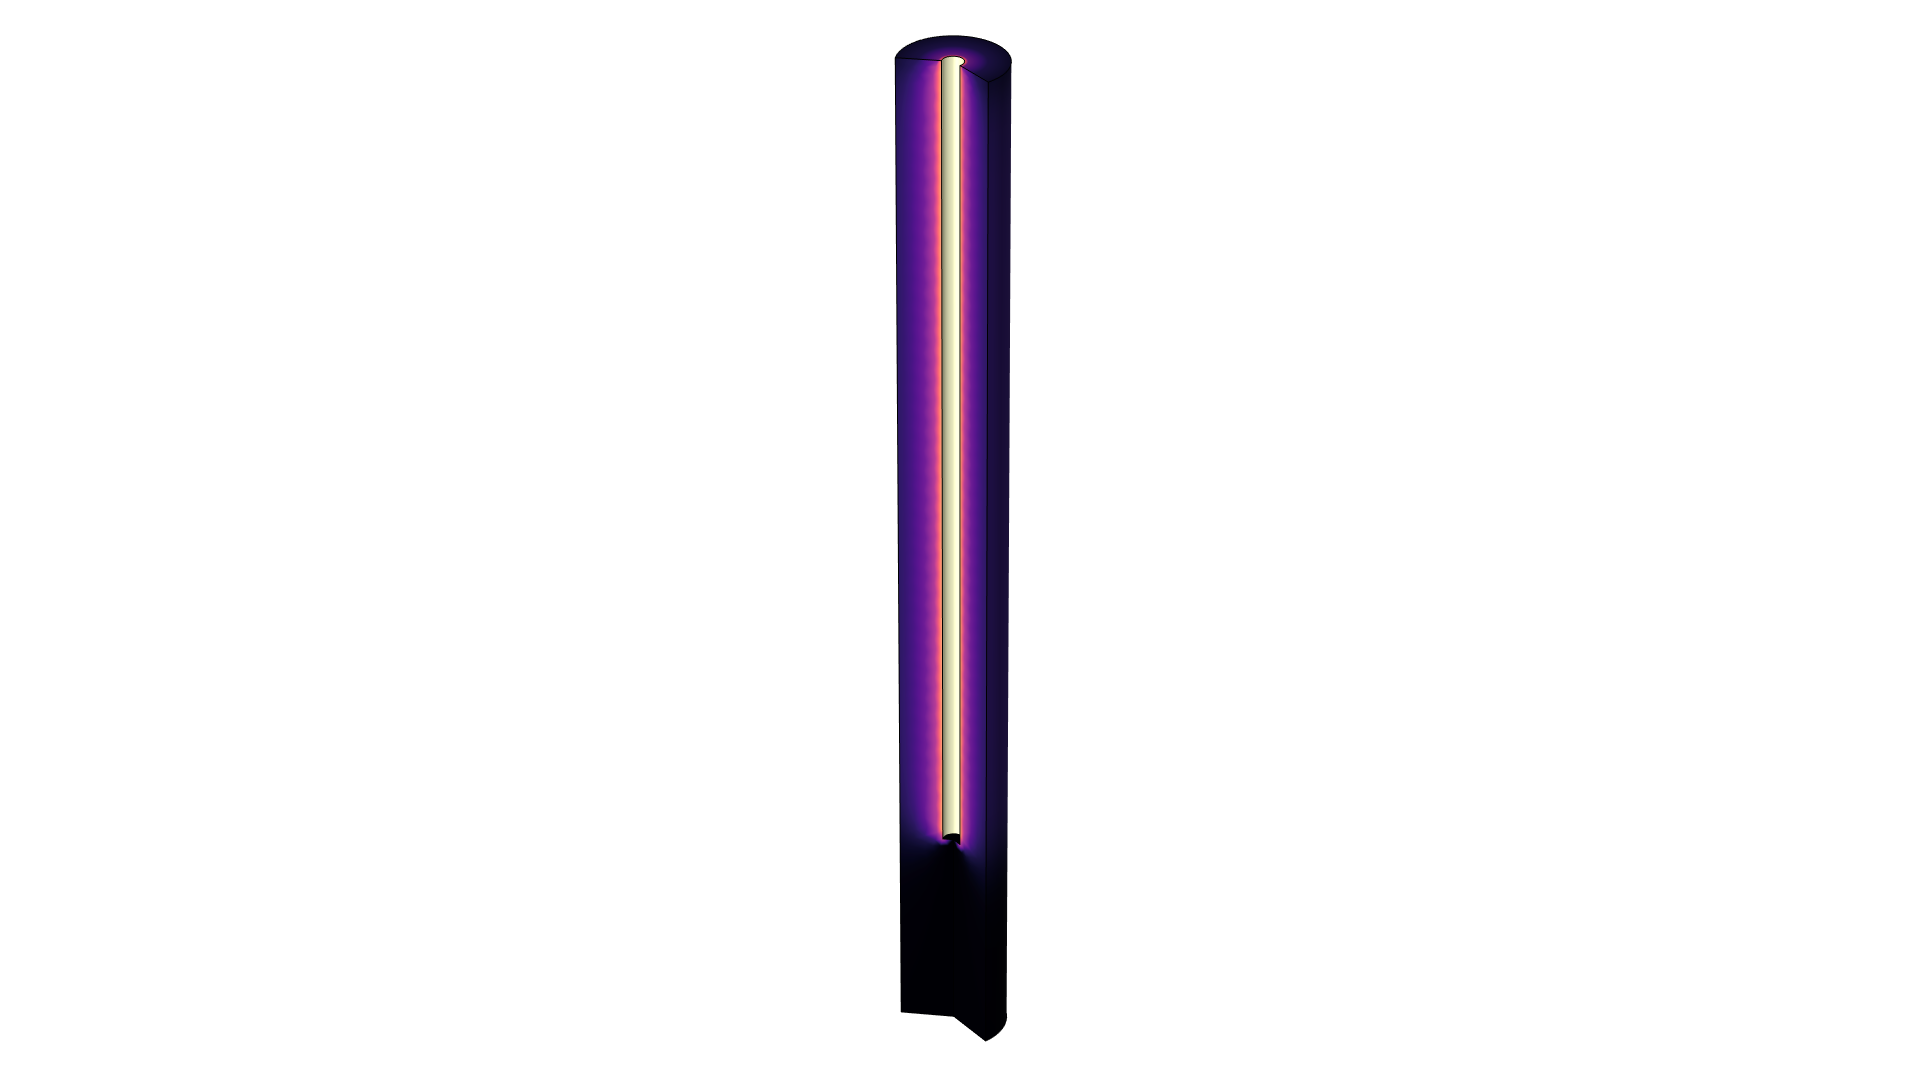 以 Magma 颜色表显示的紫外反应器模型。